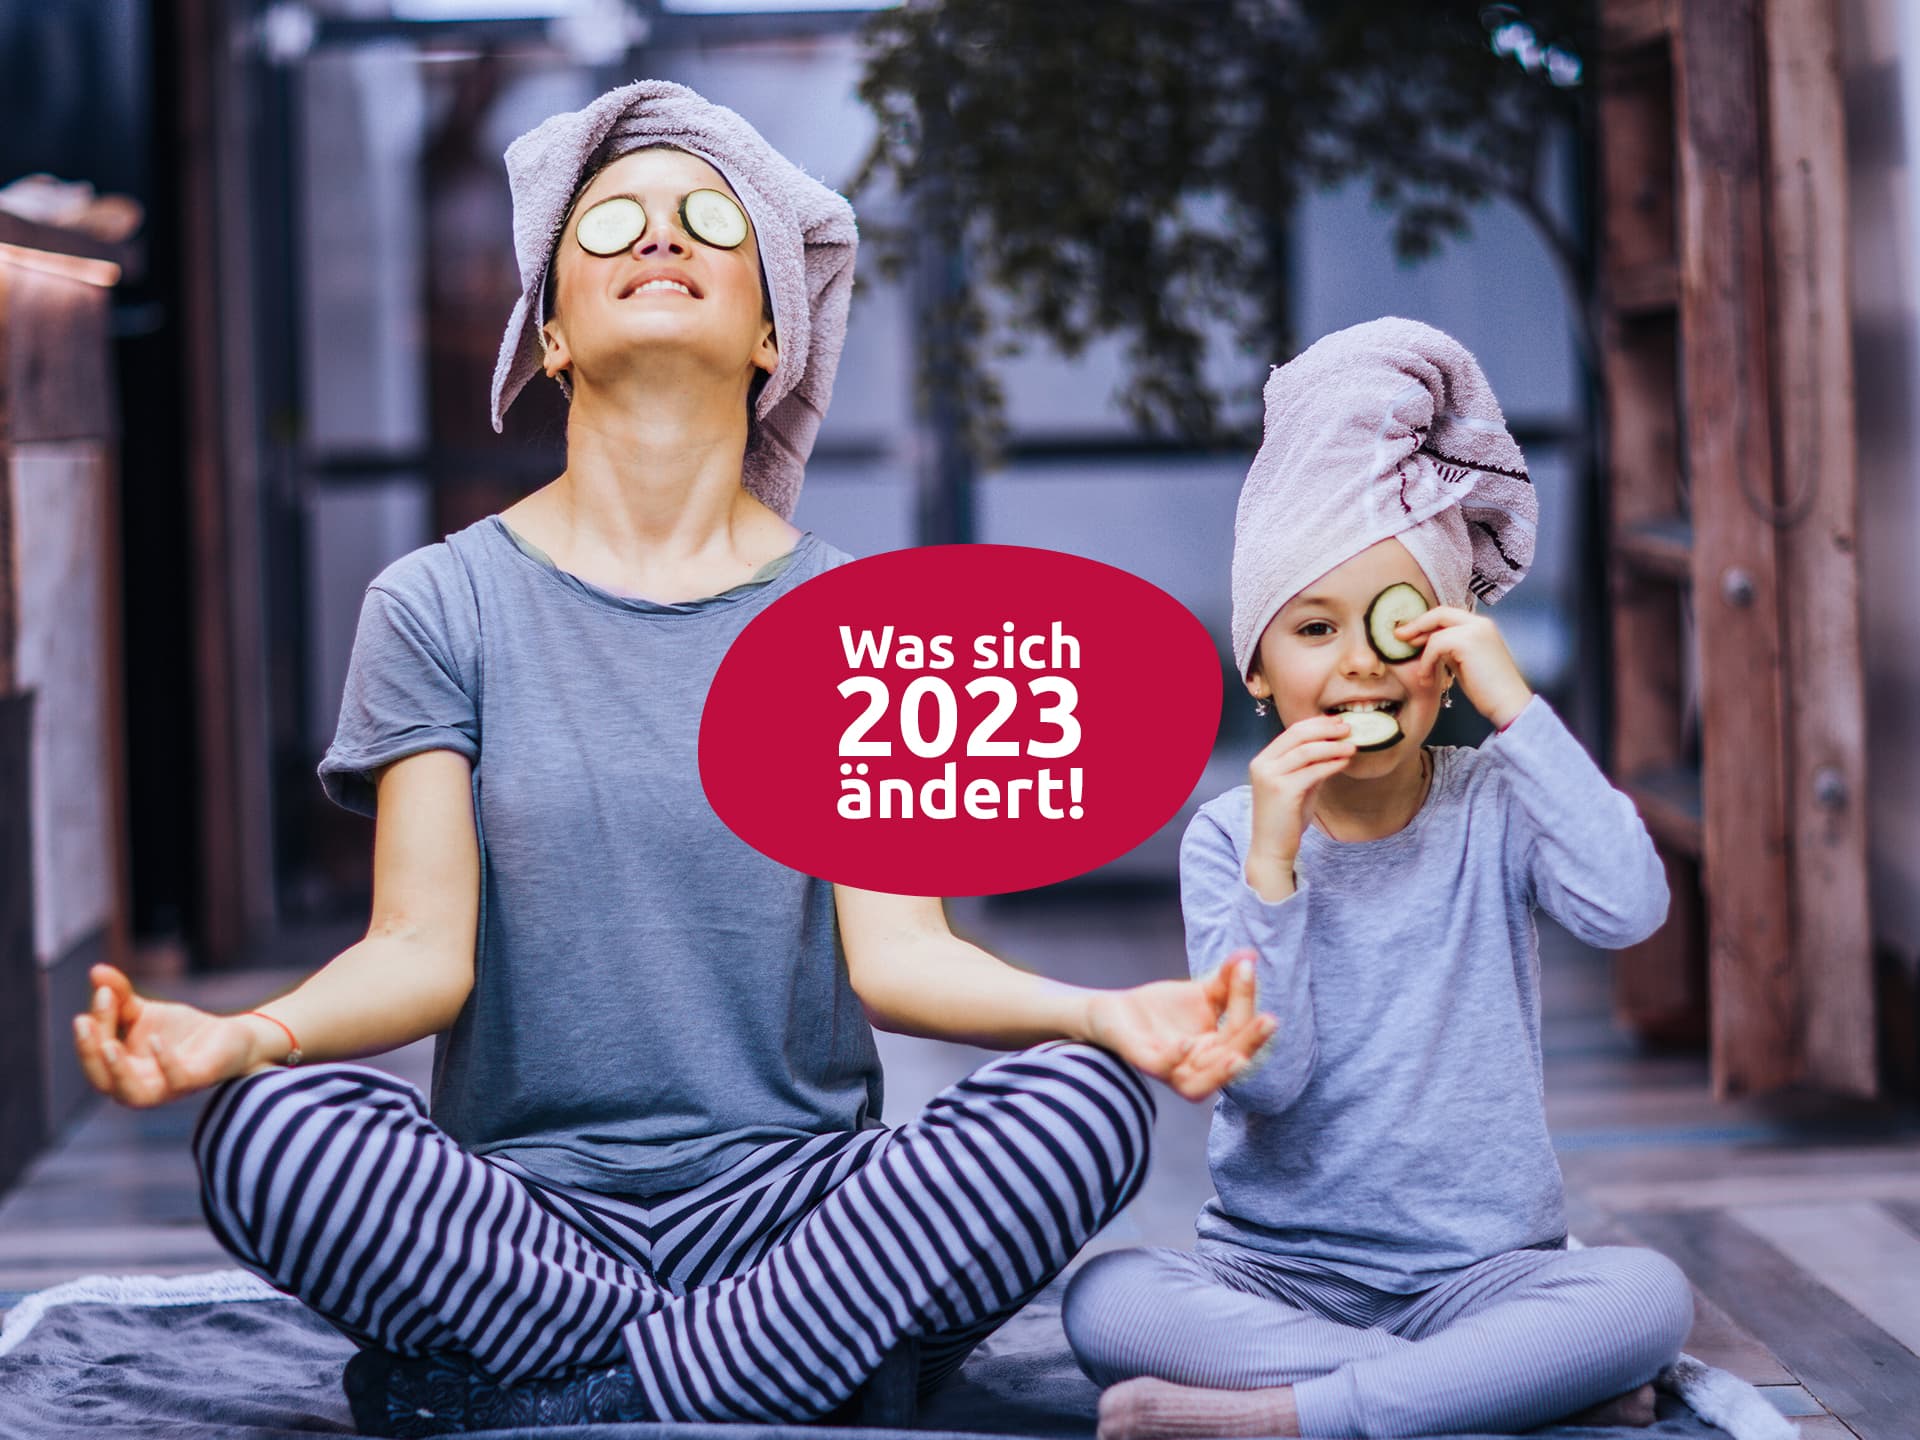 Was sich 2023 beim Thema Gesundheit ändert!